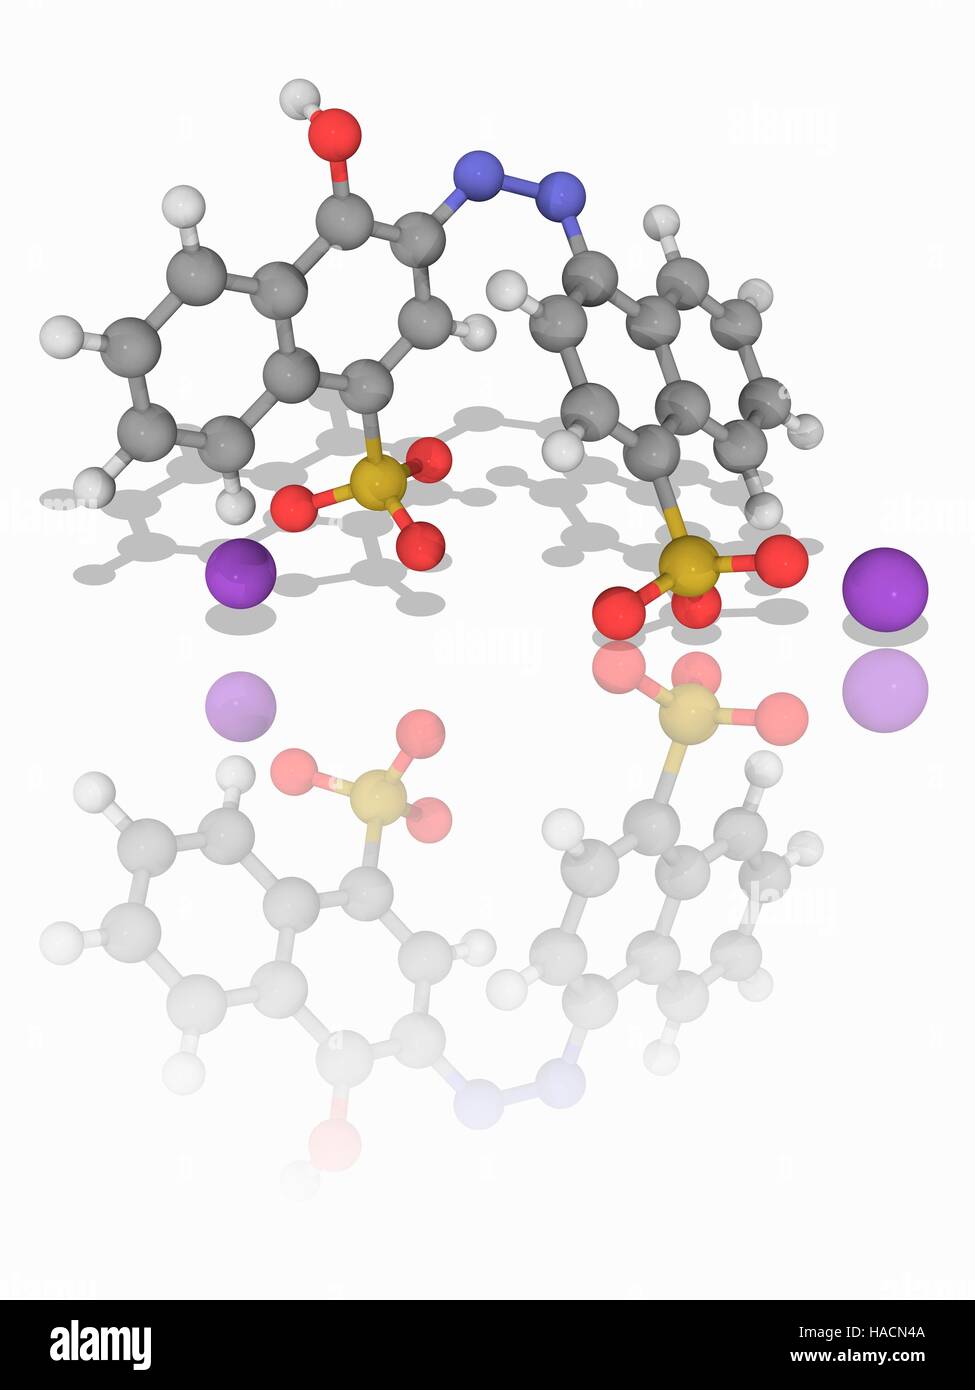 Azorubine. Le modèle moléculaire du colorant rouge synthétique azorubine (C20.H12.N2.Na2.O7.S2). Cet additif alimentaire a le numéro E122. Les atomes sont représentés comme des sphères et sont codés par couleur : carbone (gris), l'hydrogène (blanc), l'azote (bleu), l'oxygène (rouge) et le soufre (jaune). Les ions sodium sont violet. L'illustration. Banque D'Images